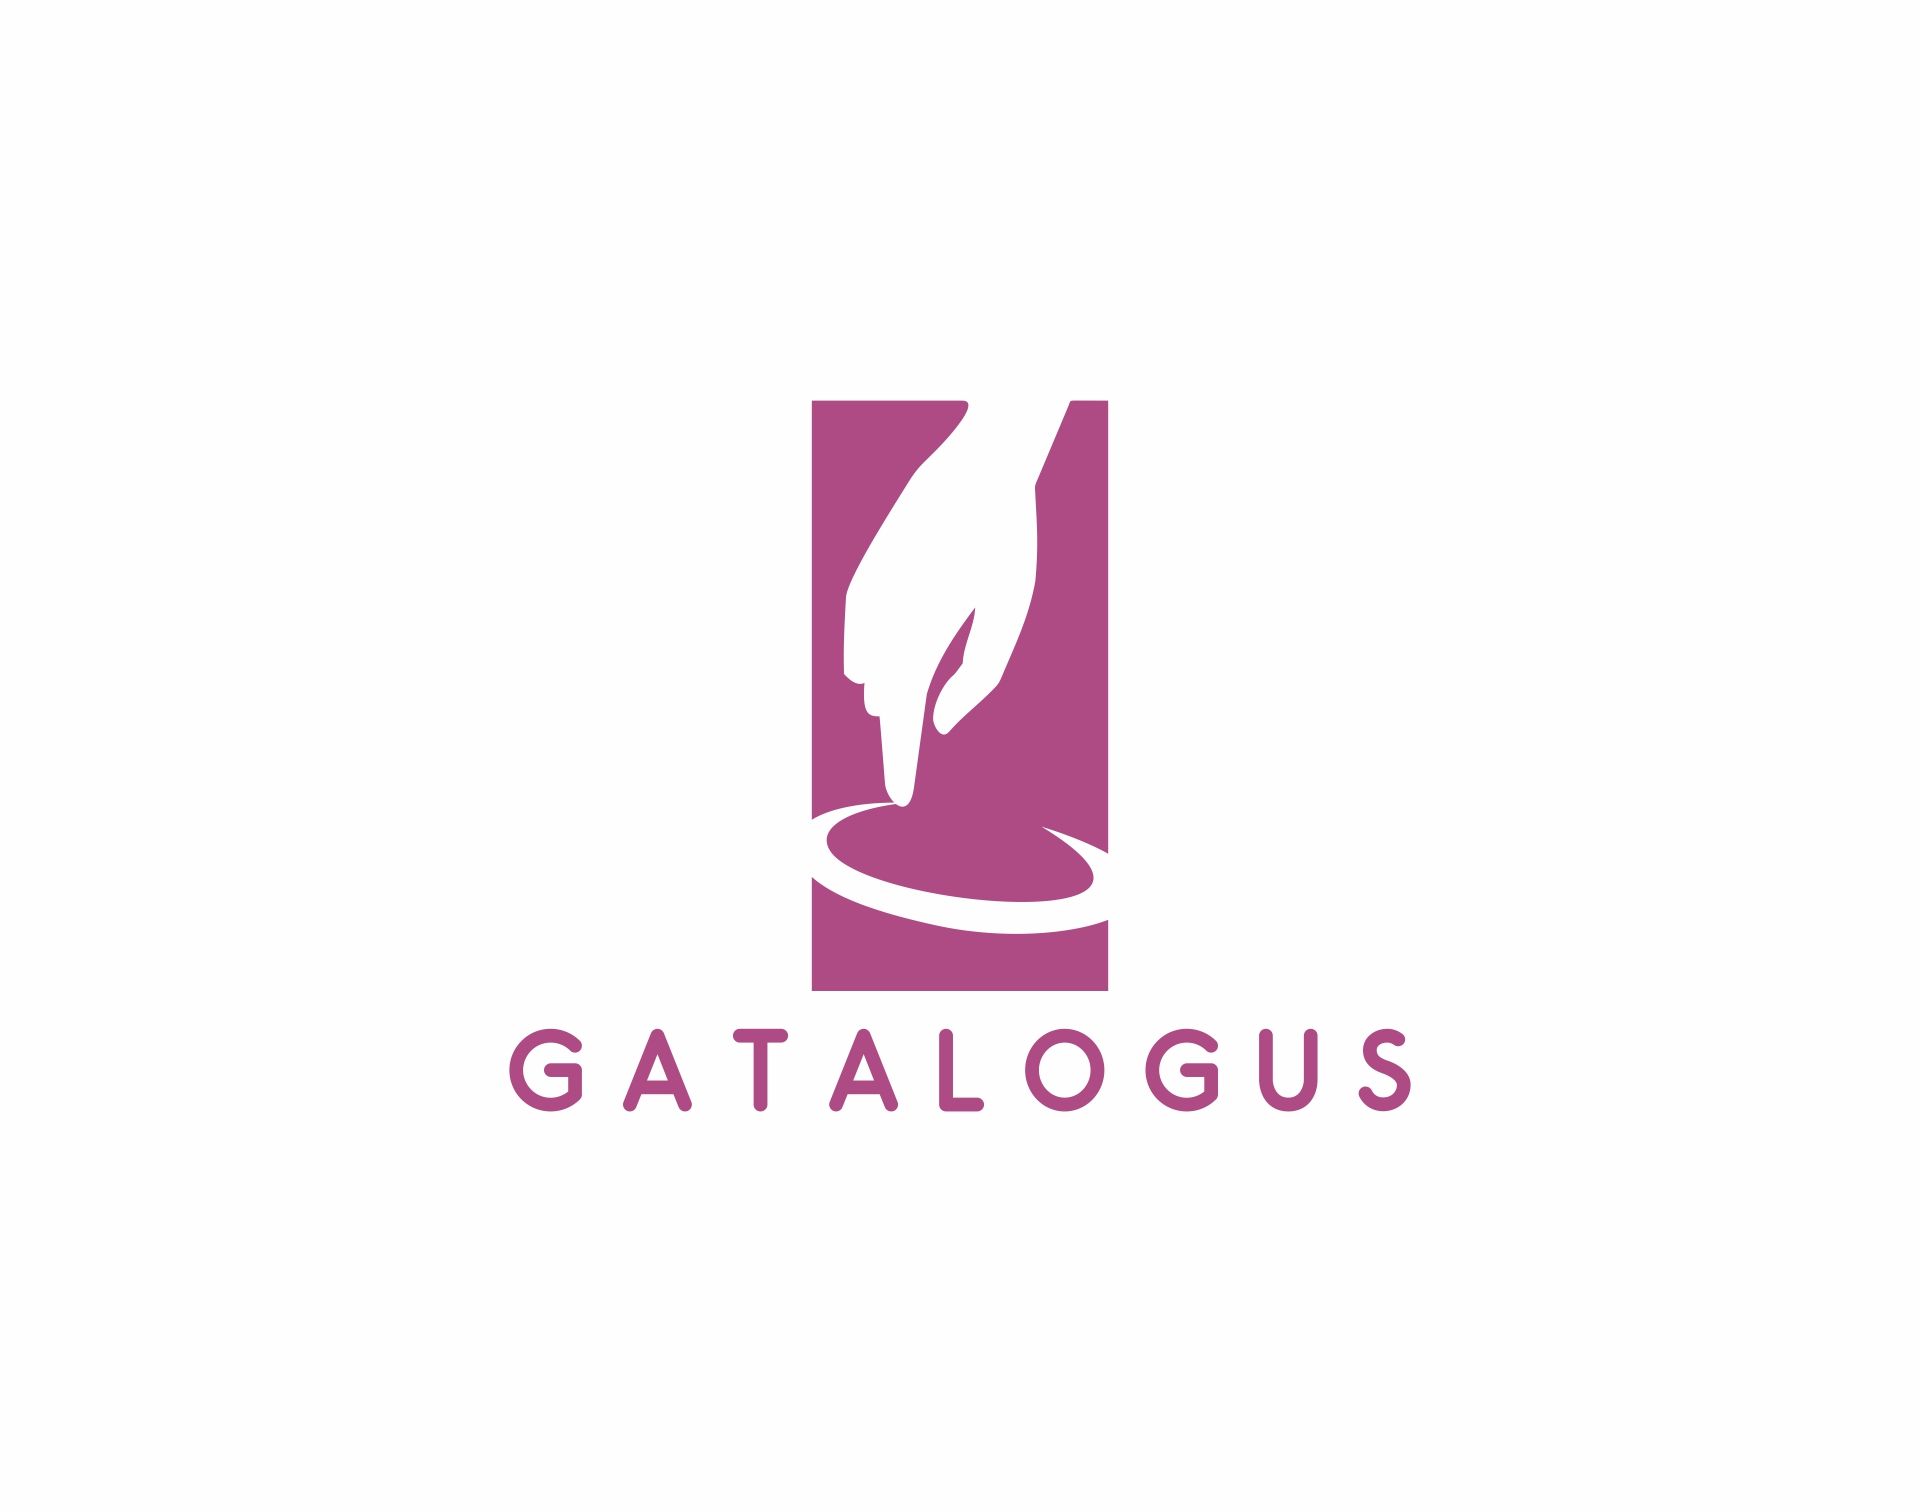 Логотип для интернет-портала catalogus - дизайнер Antark2000